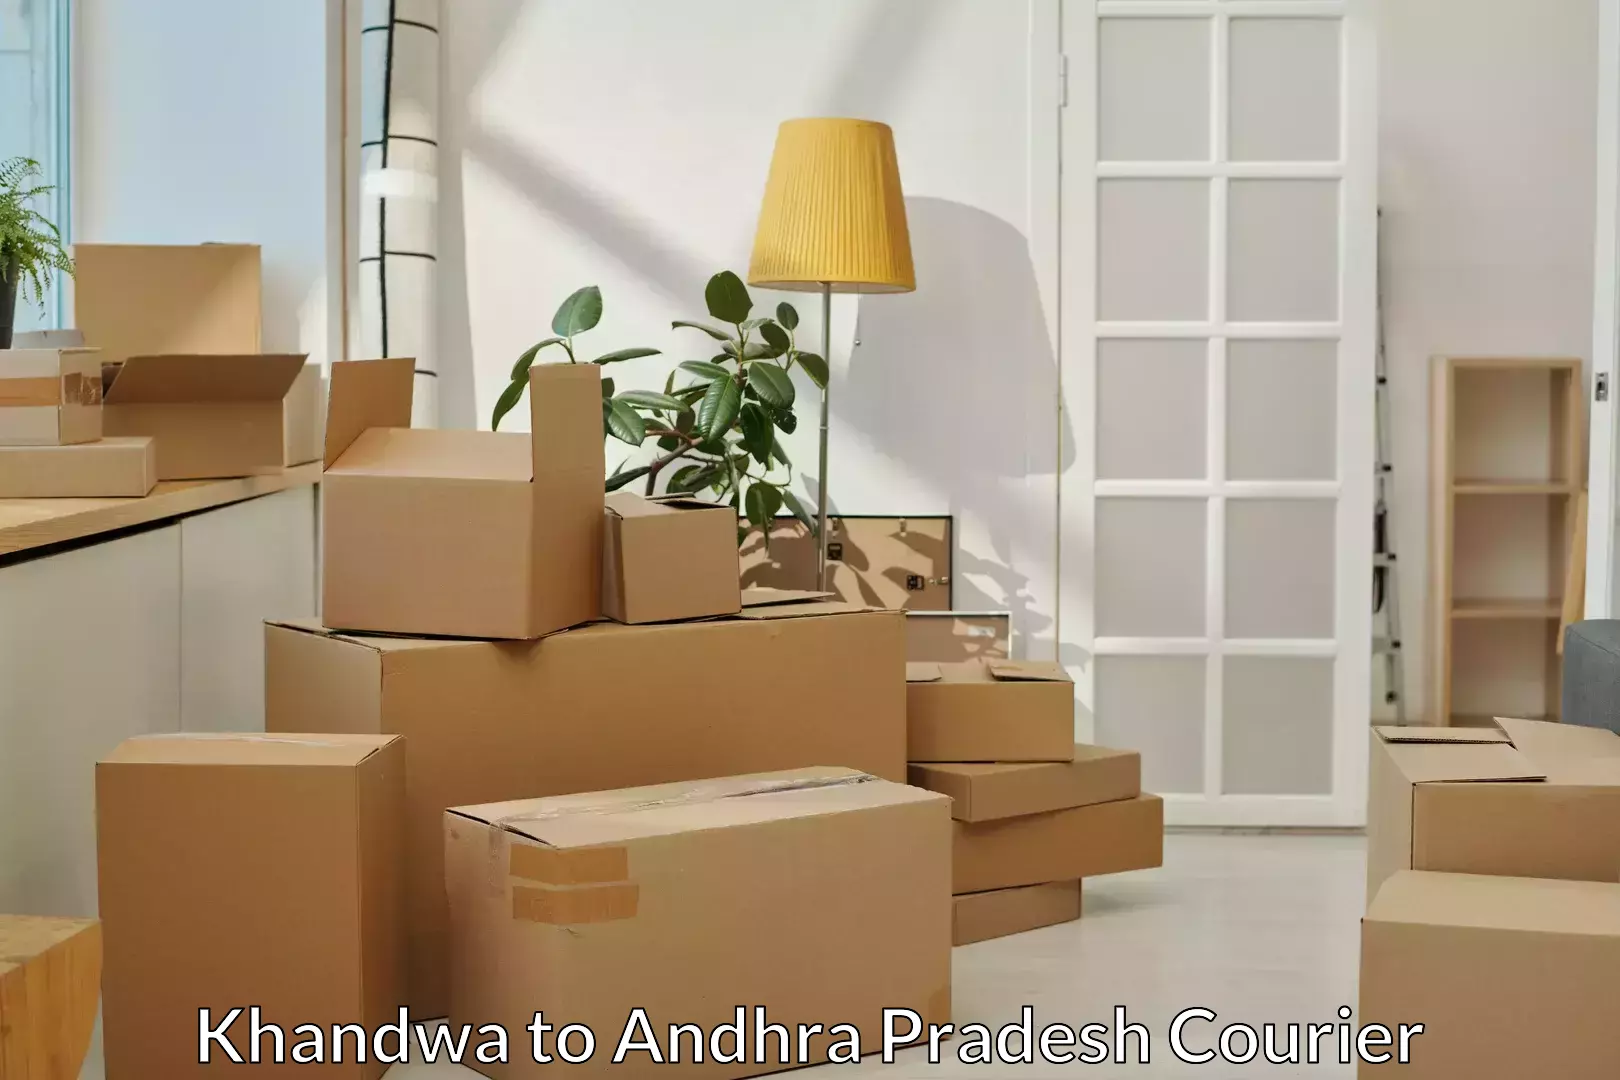 Furniture moving experts Khandwa to Andhra Pradesh